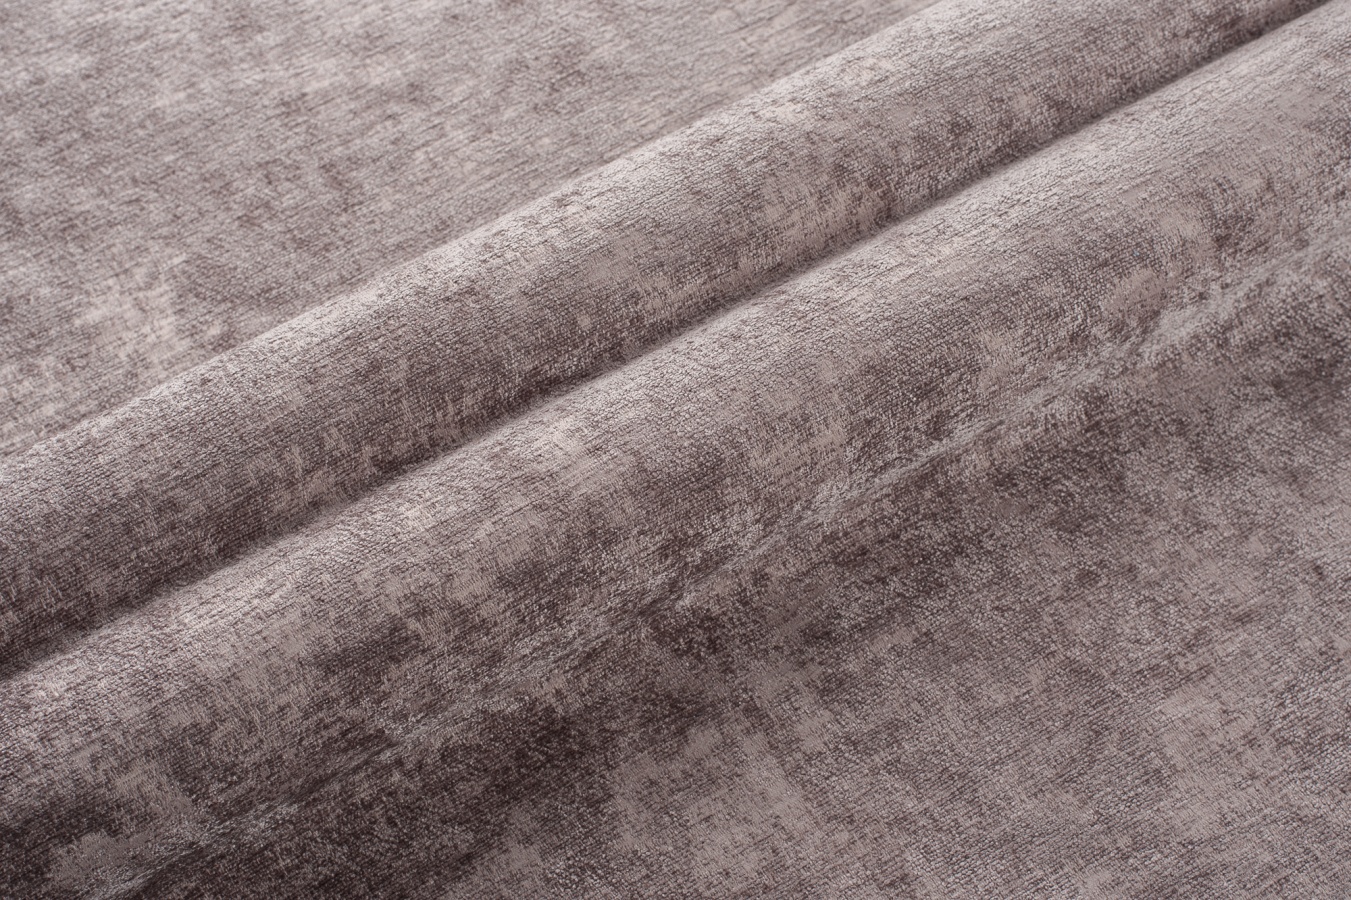 Шенилл — обивочная ткань со сложным рисунком плетения